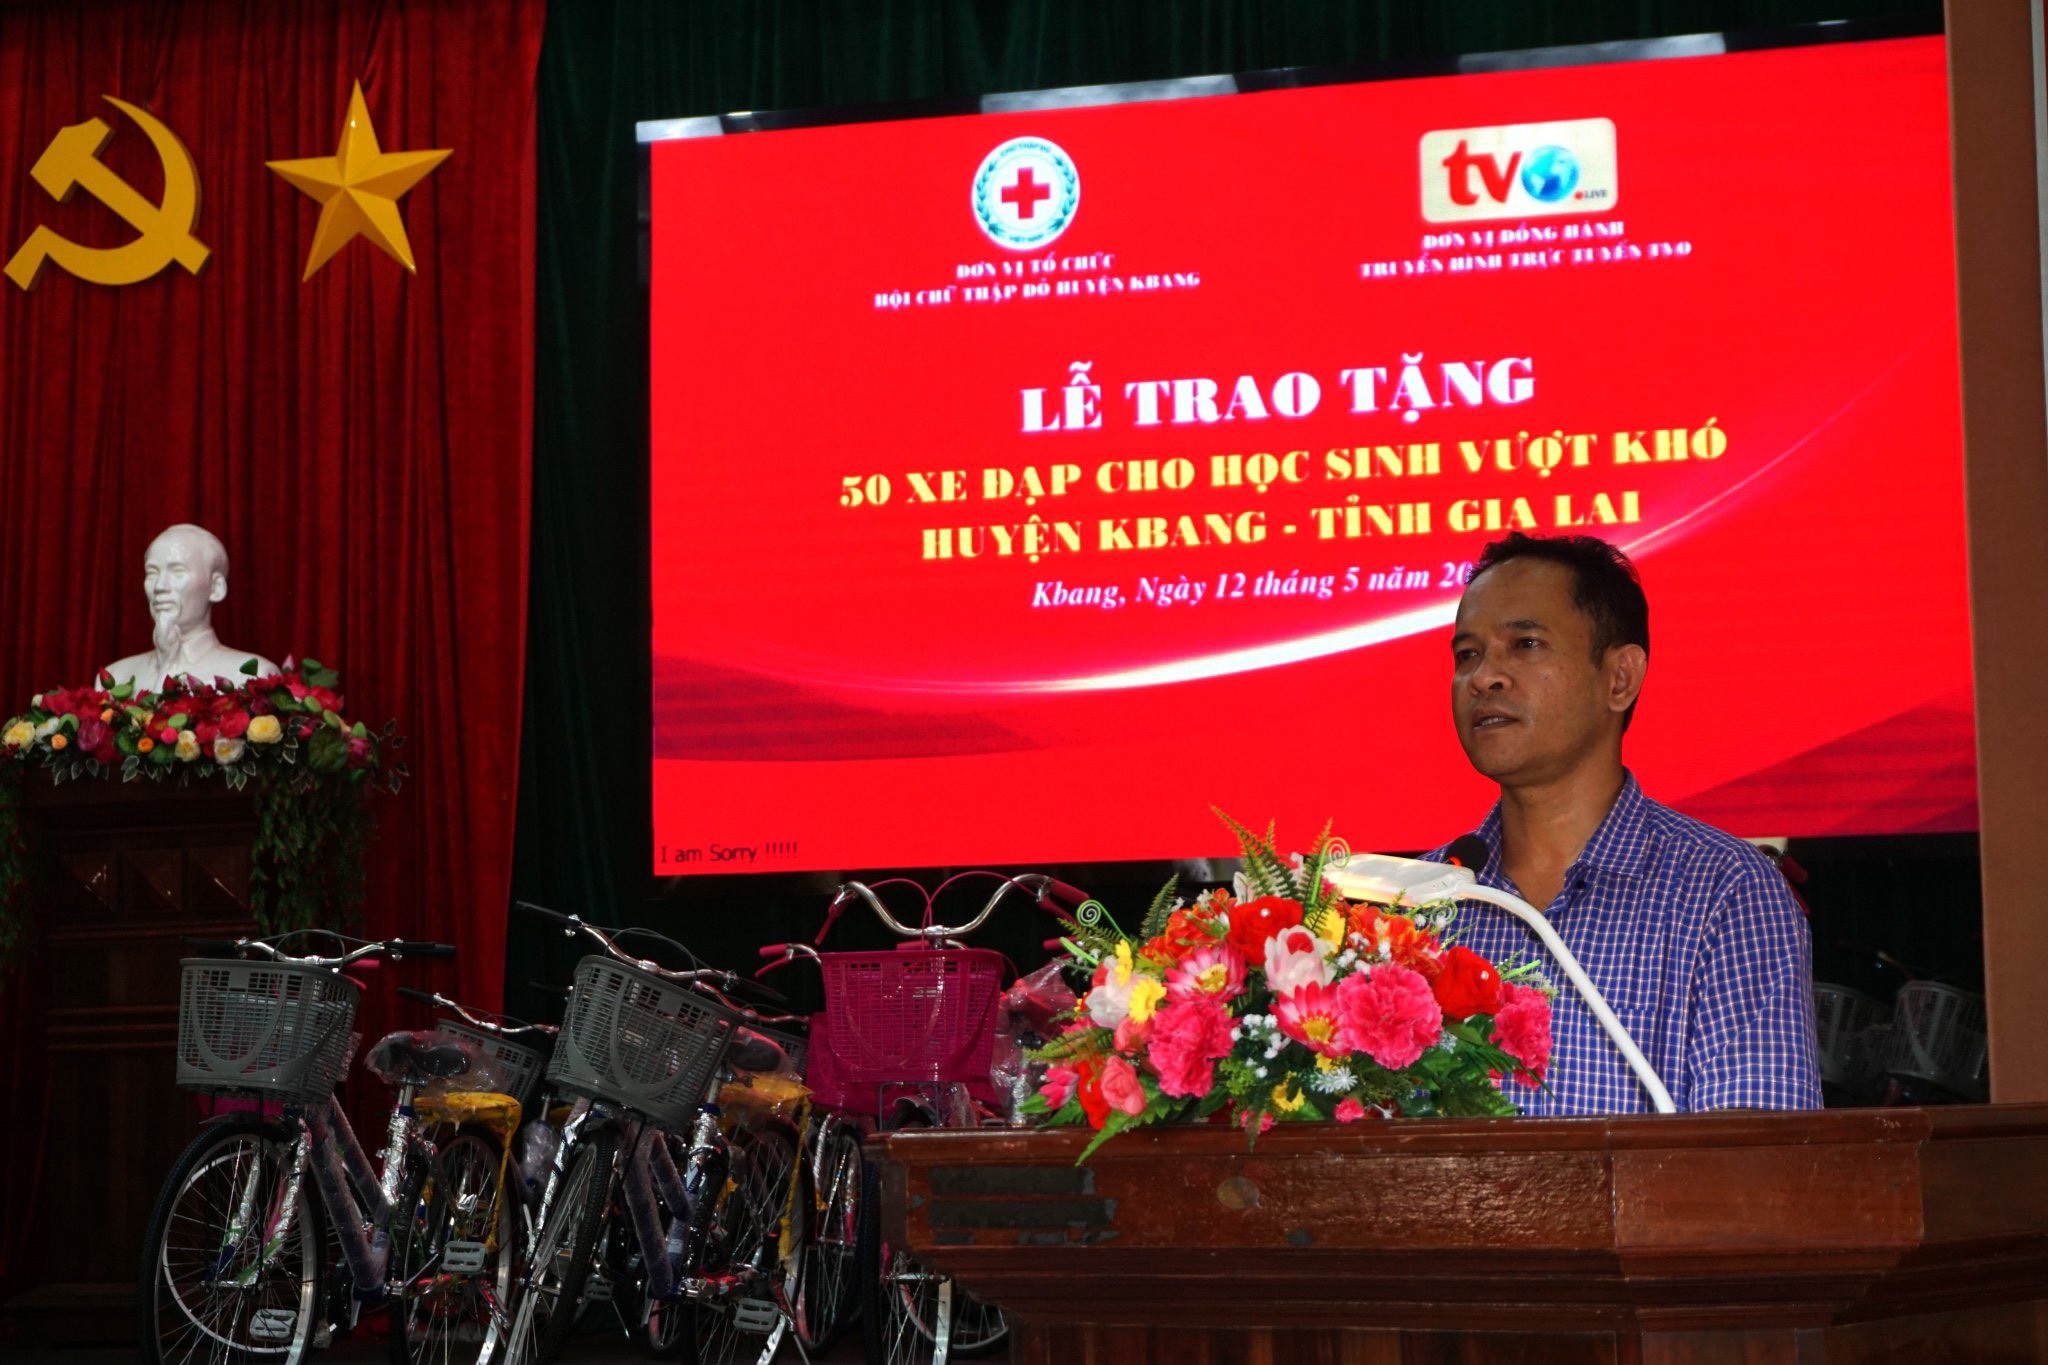 Trao tặng 50 xe đạp cho học sinh vượt khó Huyện Kbang - Gia Lai